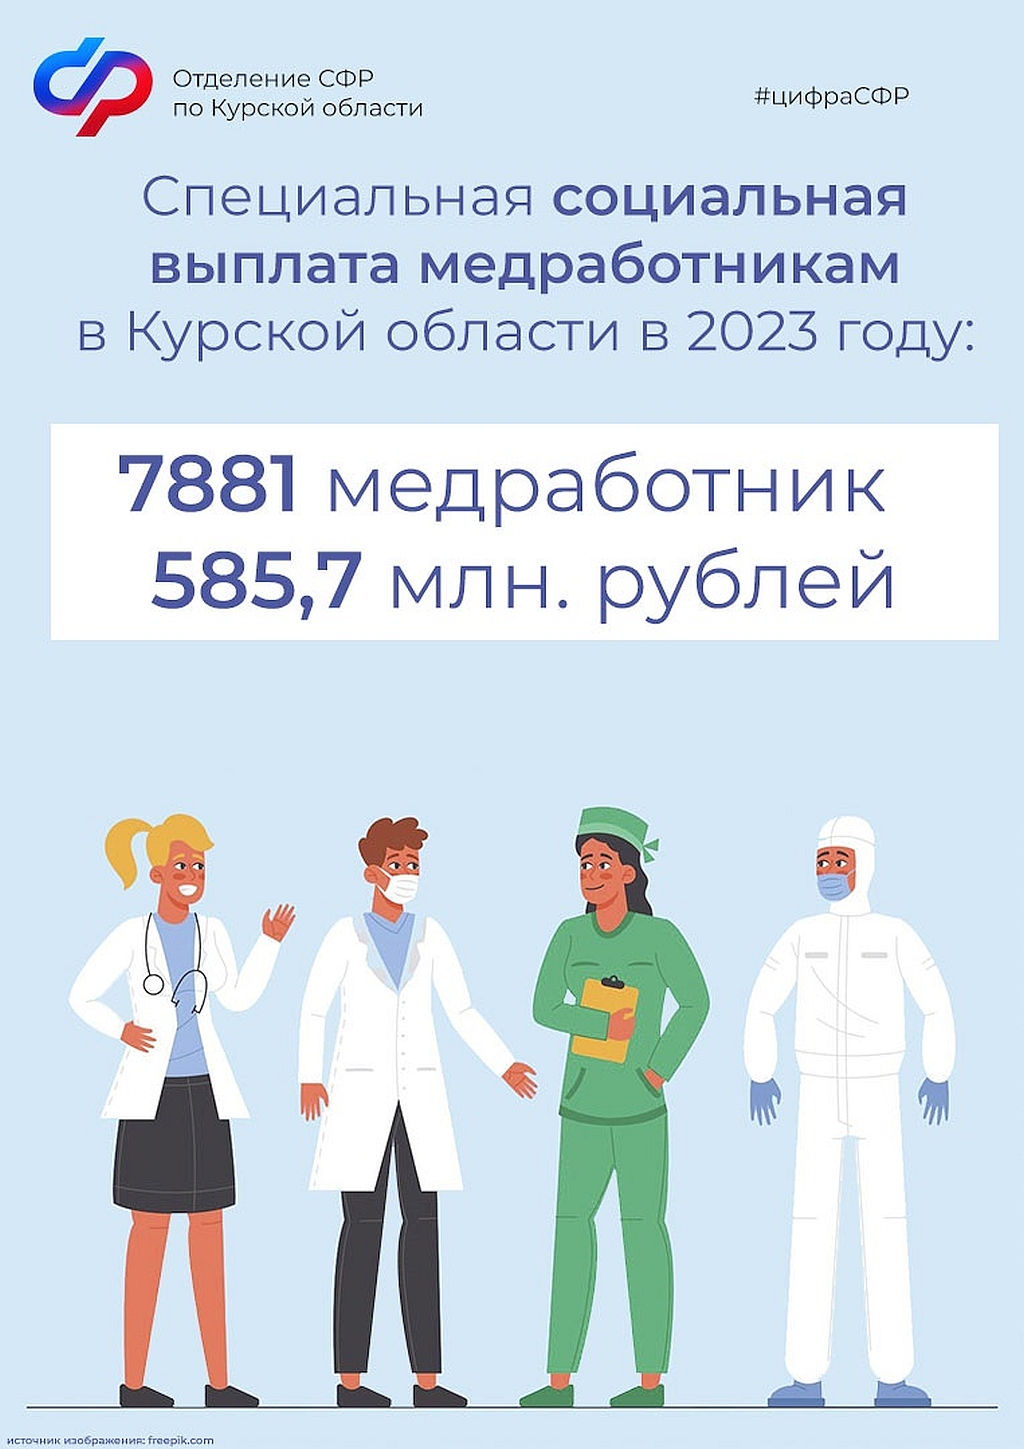 Более 7,8 тысячи медицинских работников в Курской области получили специальные социальные выплаты в 2023 году.